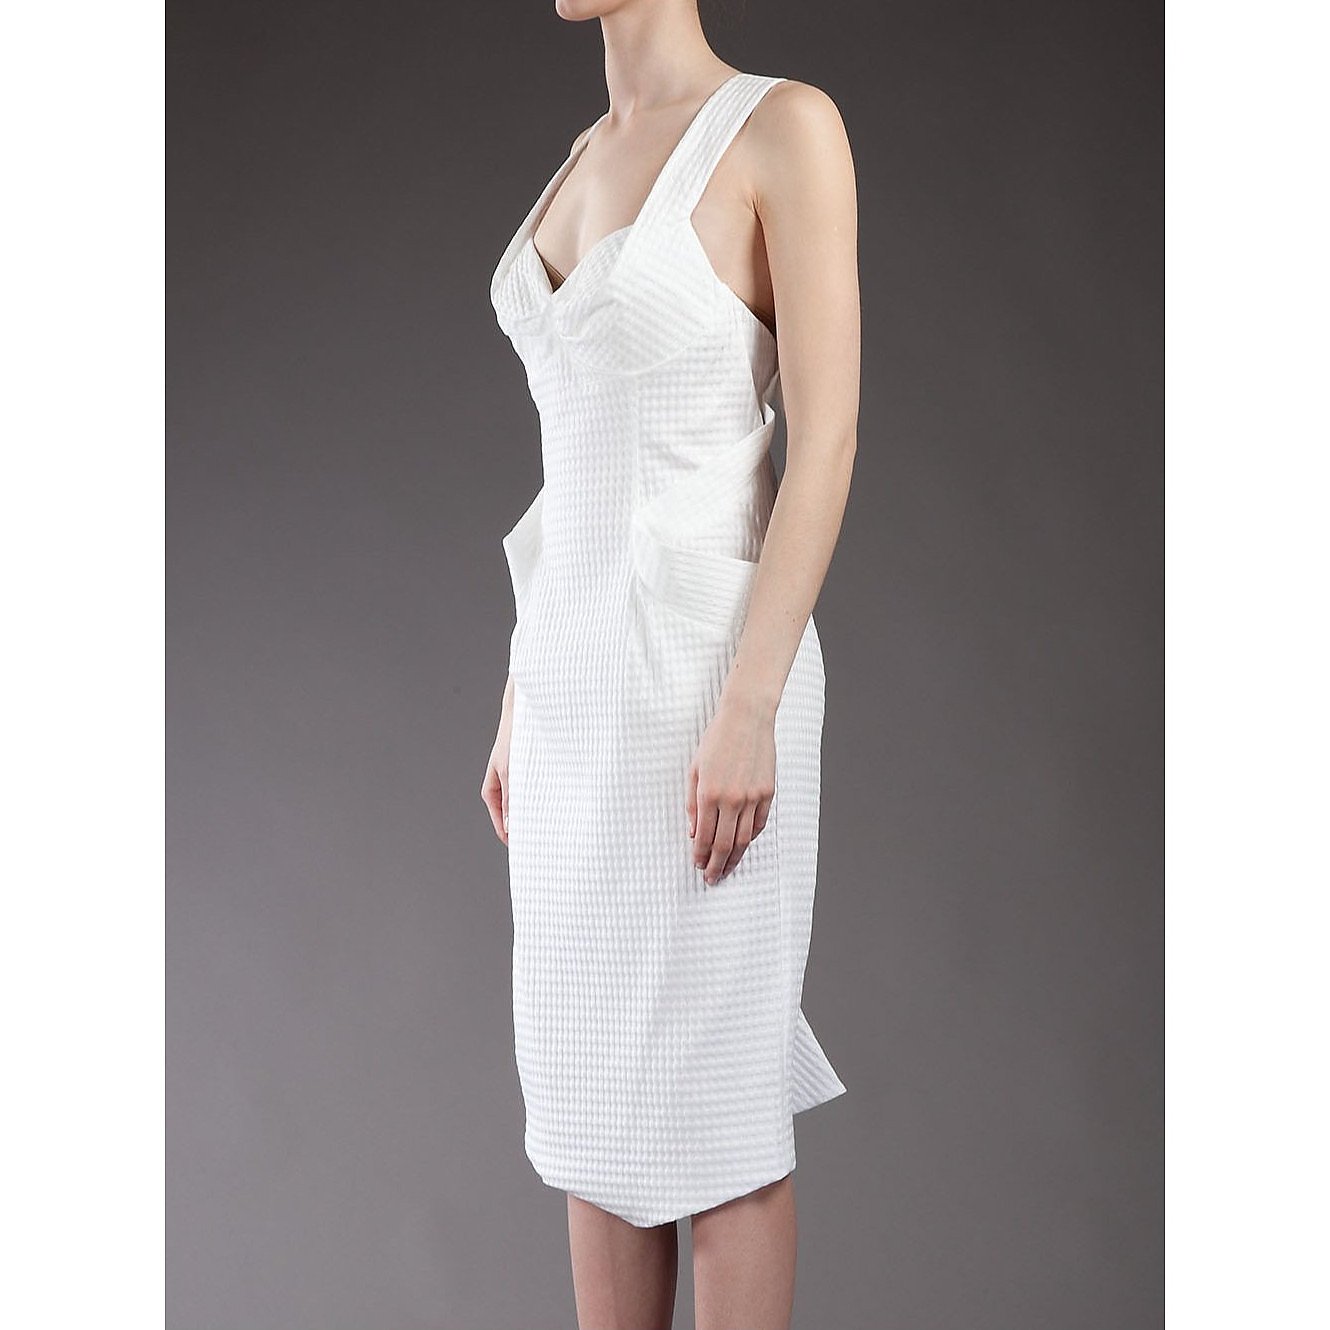 Vivienne Westwood Textured Cotton Dress